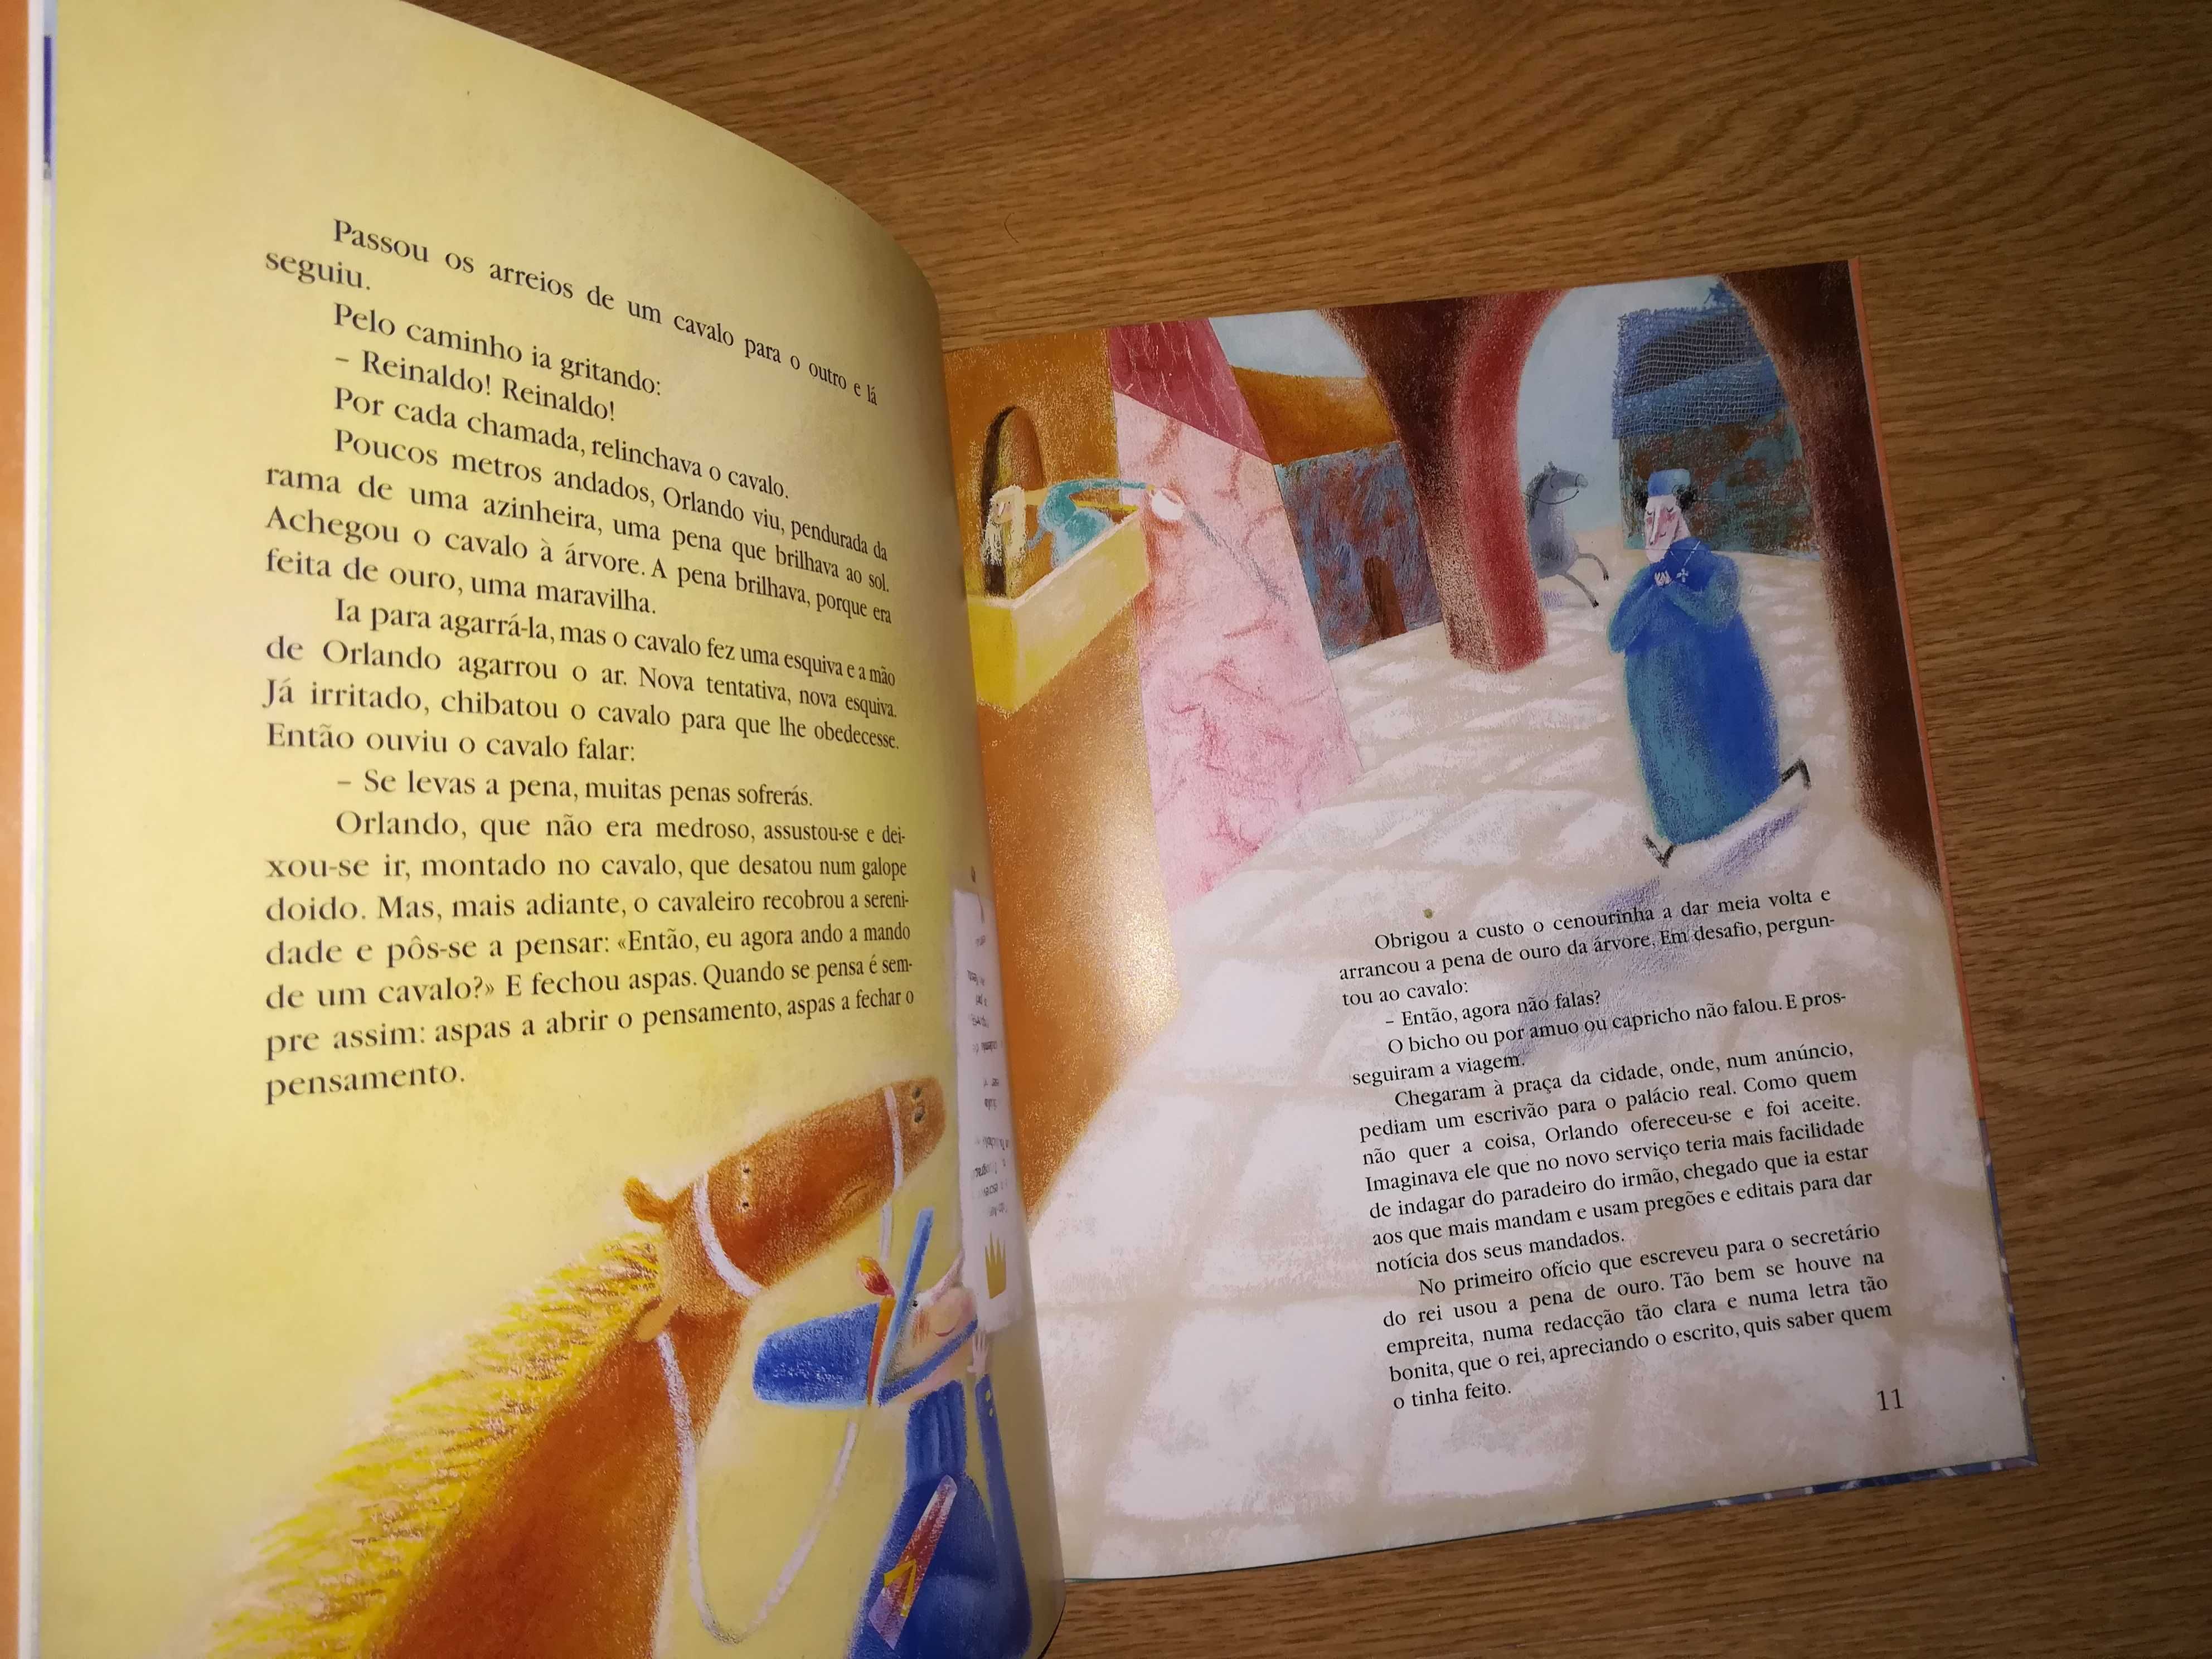 Livro" A Pena de Ouro e Outras Histórias" de António Torrado - NOVO